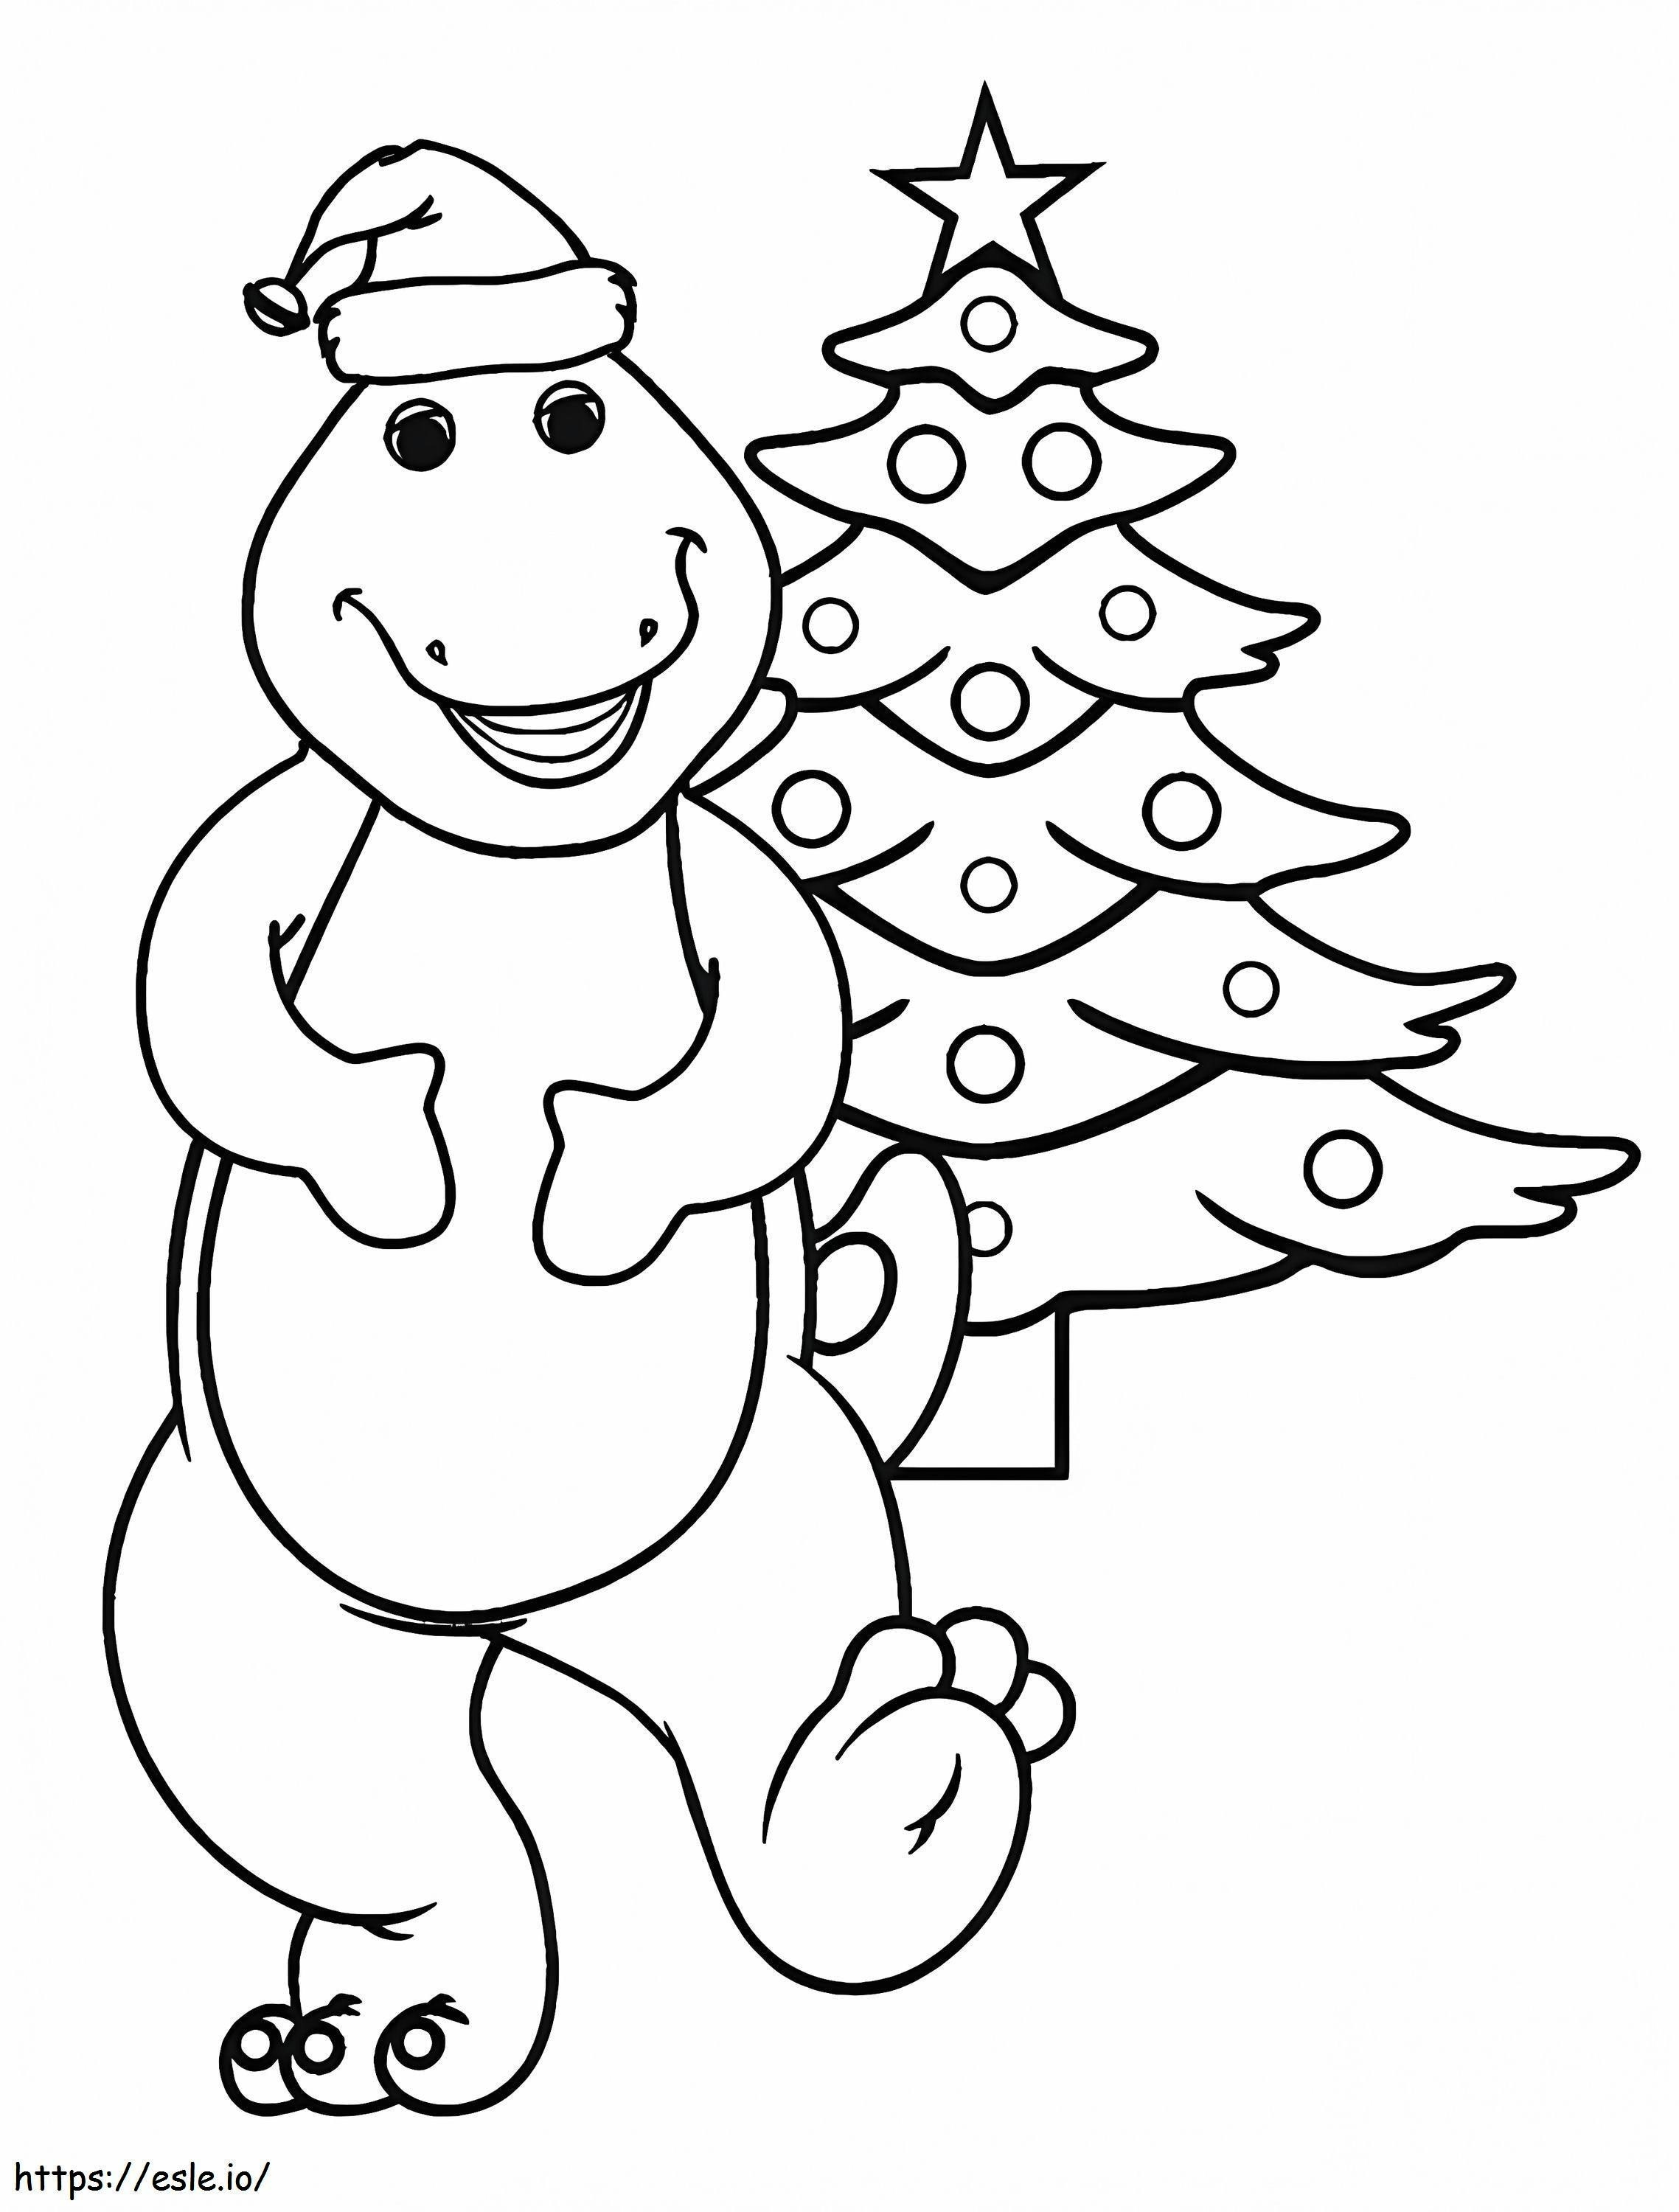 1583224139 Barney voor Kerstmis Barney Kerstmis kleurplaat kleurplaat